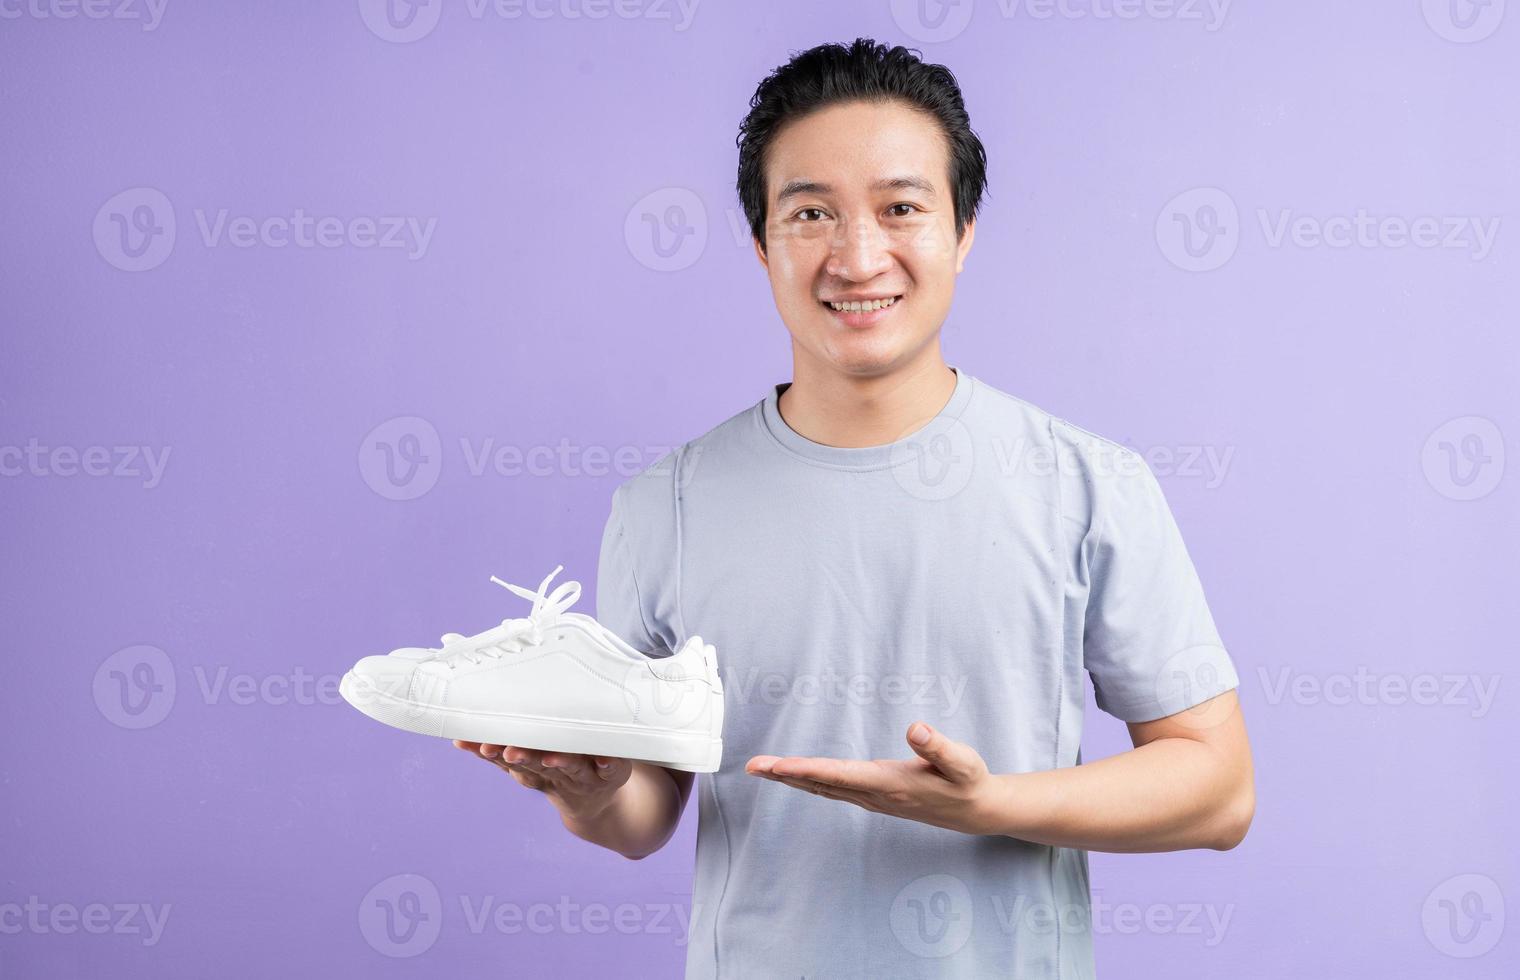 homme asiatique tenant des baskets sur fond violet photo